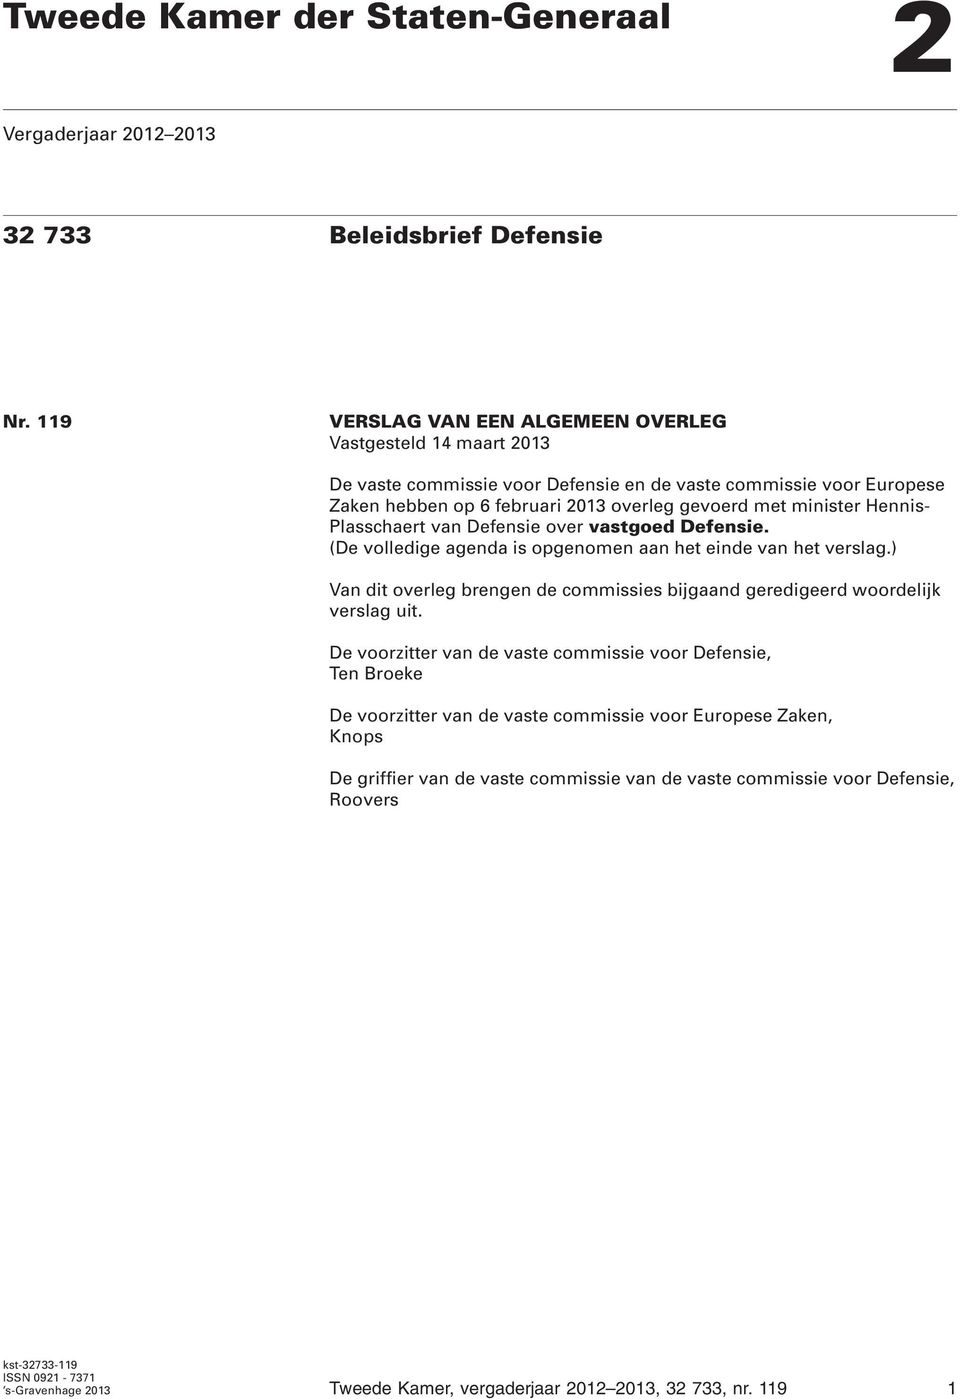 Hennis- Plasschaert van Defensie over vastgoed Defensie. (De volledige agenda is opgenomen aan het einde van het verslag.